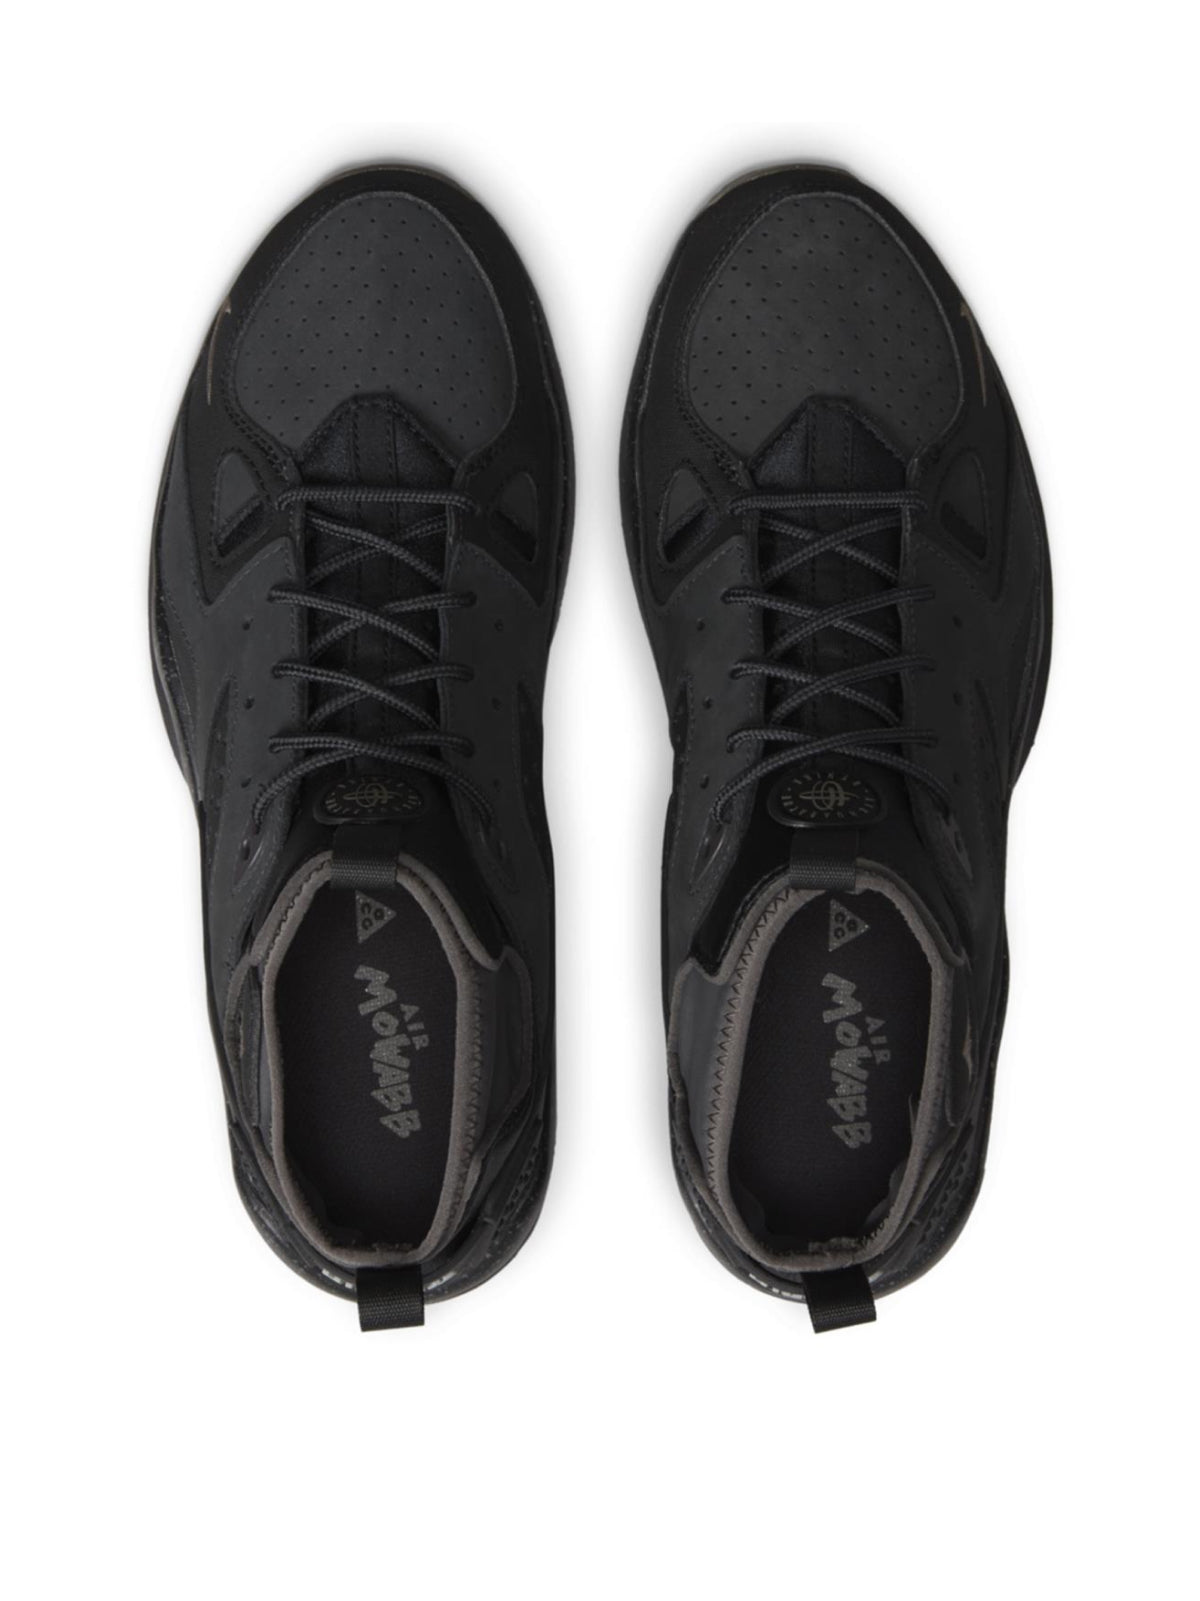 Nike-OUTLET-SALE-ACG Air Mowabb Off Noir Sneakers-ARCHIVIST